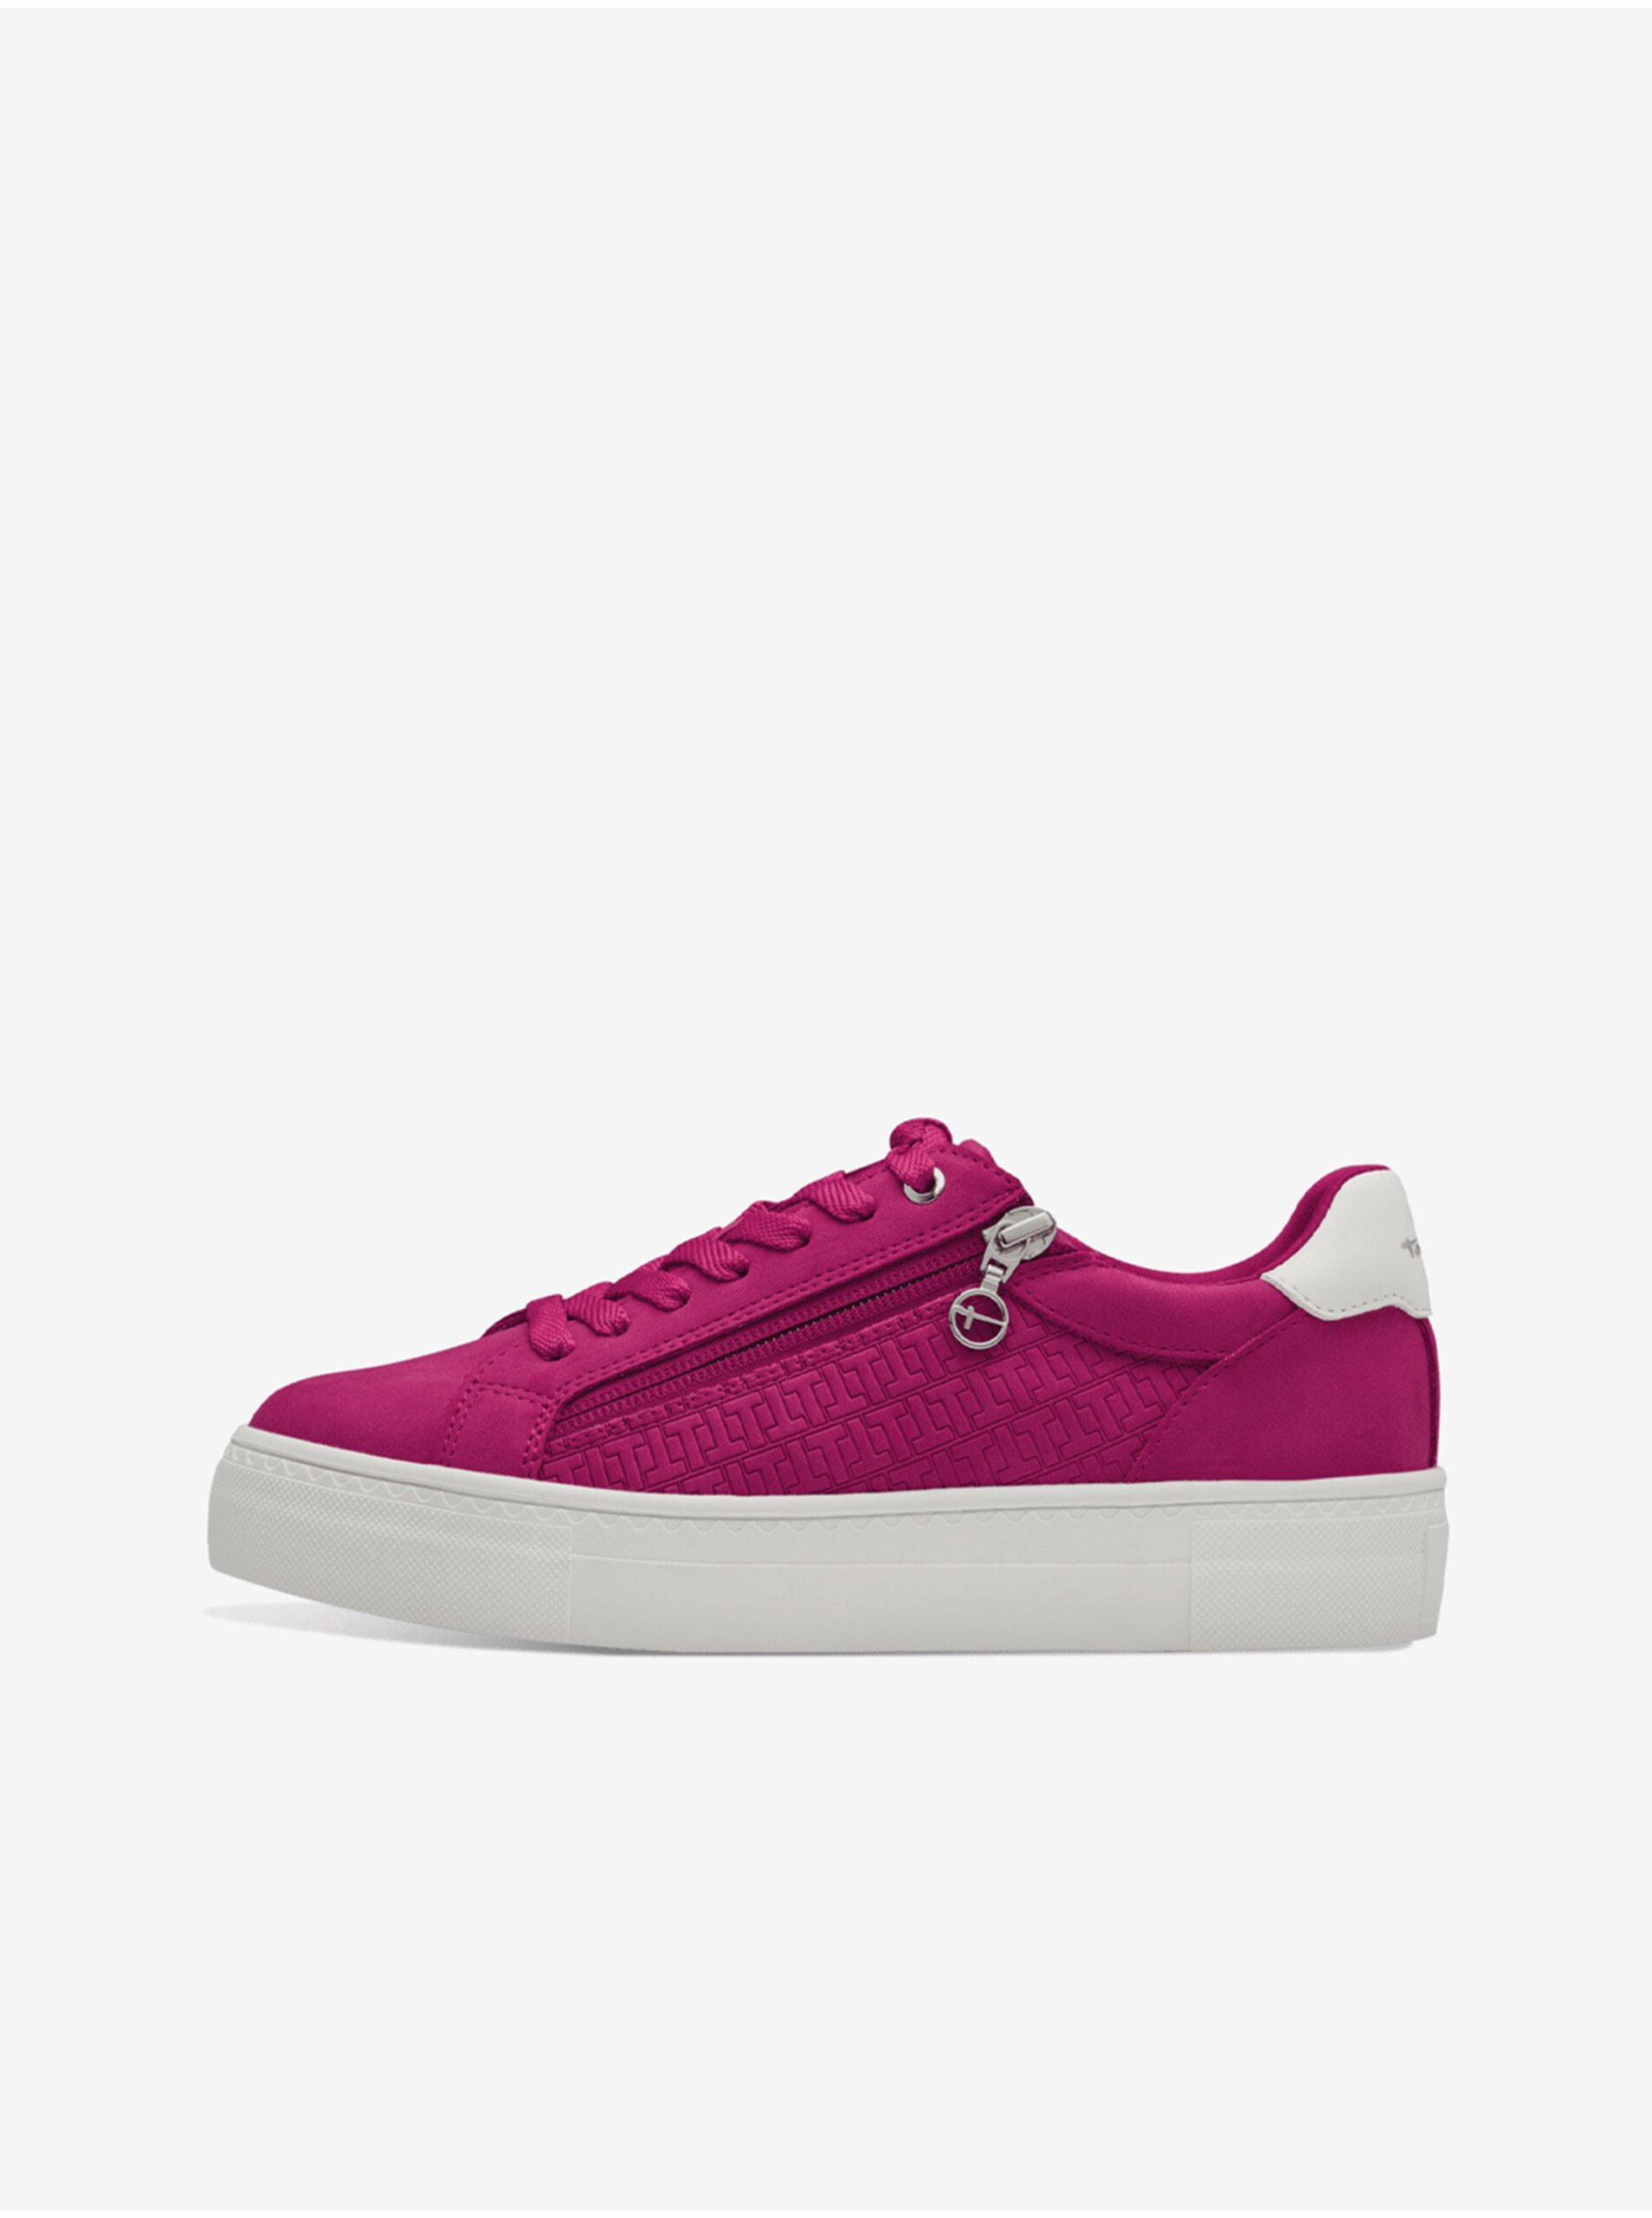 Tamaris women's dark pink sneakers - Women